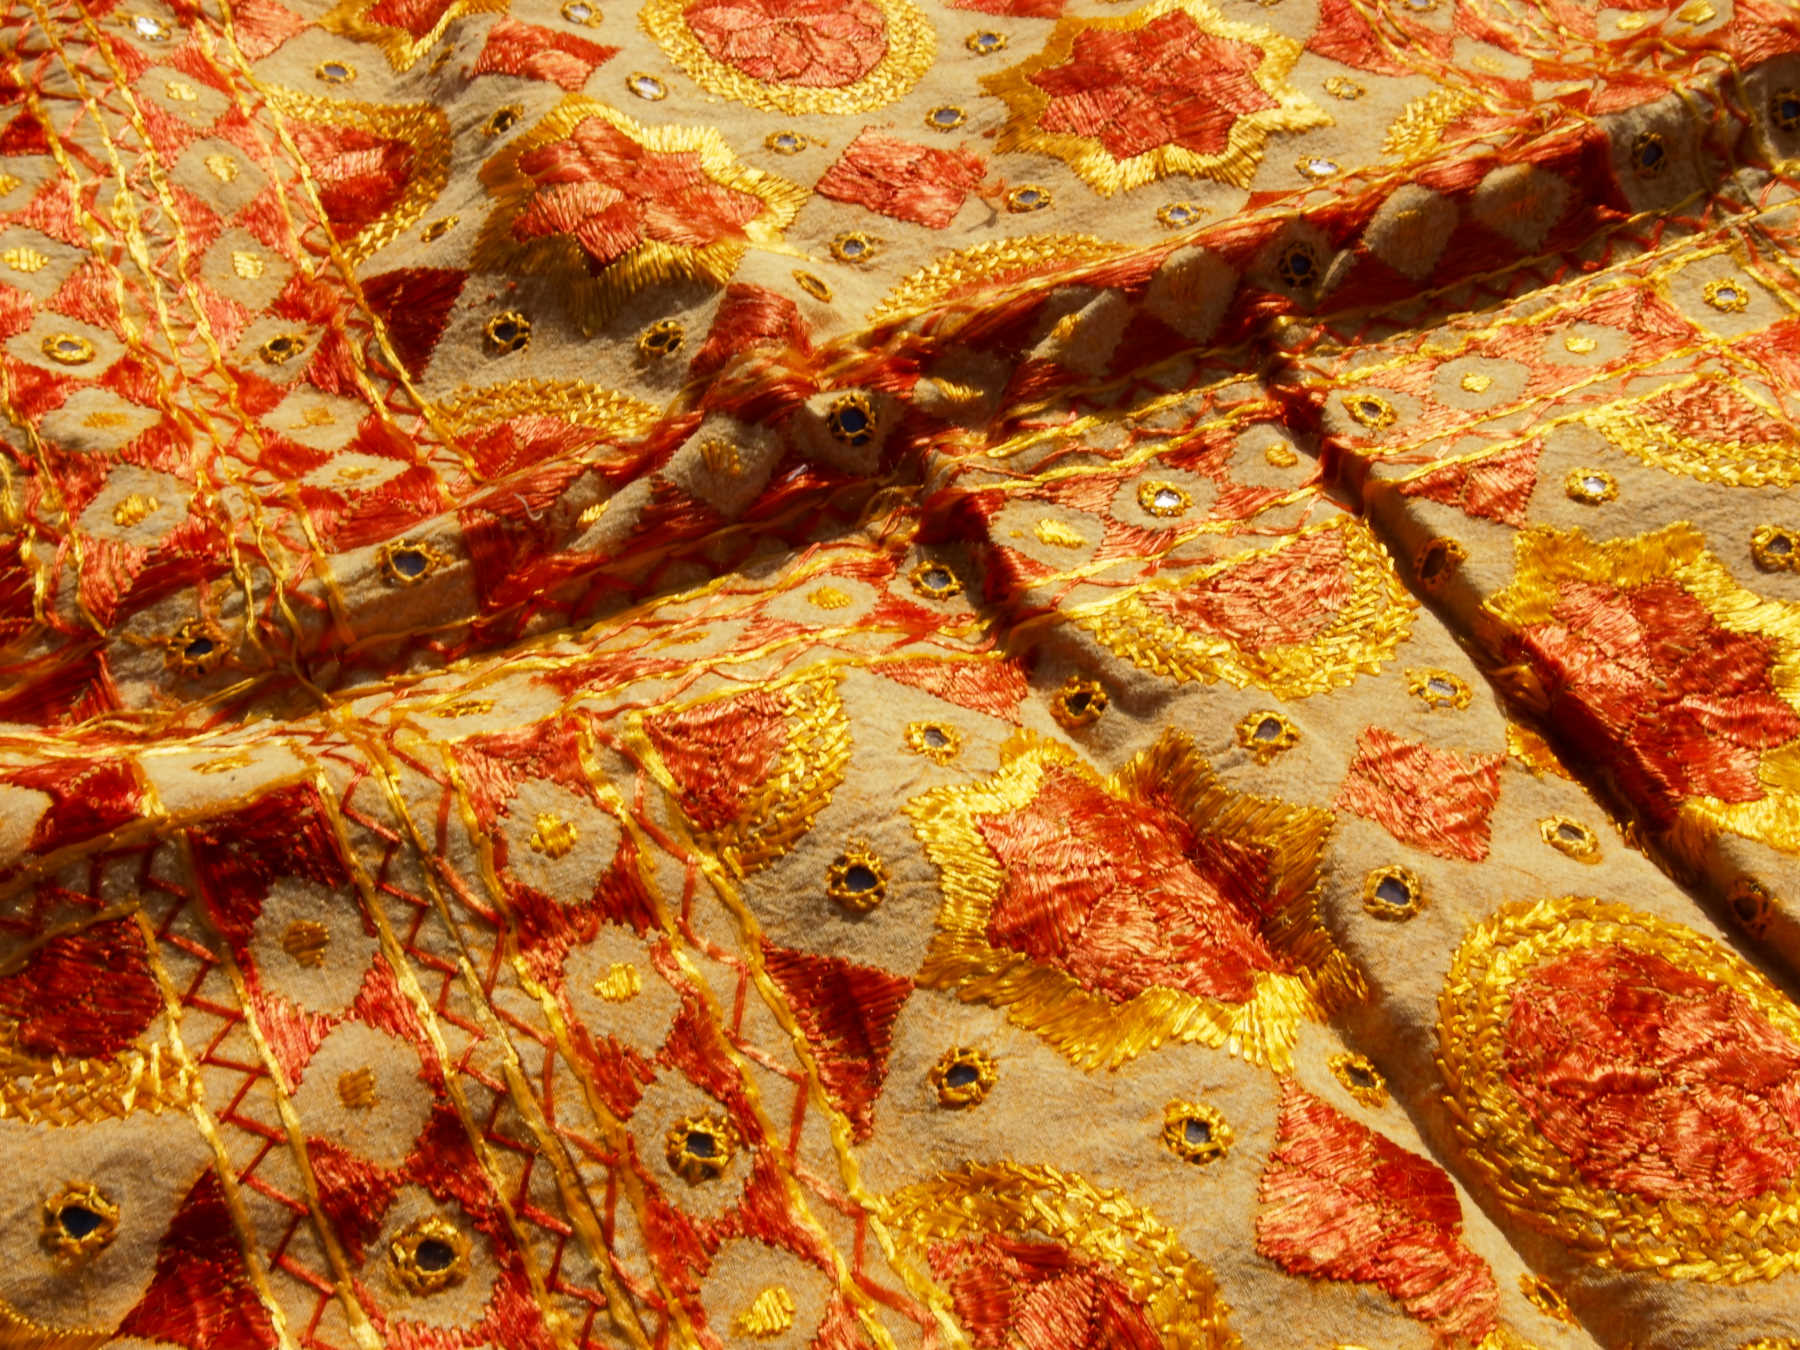 Telo Indiano in cotone doppio strato, ricamato tono su tono con specchietti, giallo e arancio. Può essere impiegato come copridivano, copriletto, tovaglia o tessuto da appendere a parete. Dimensioni 200x230cm